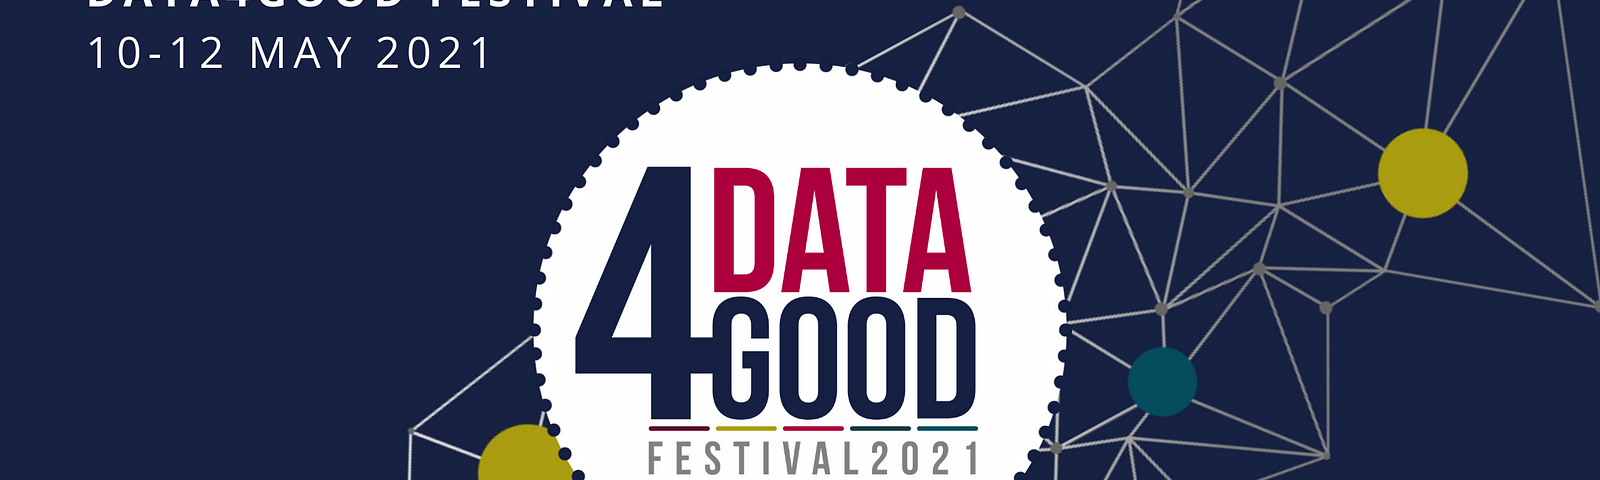 Data4Good Festival 10–12 May 2021 www.data4goodfest.org.uk #Data4GoodFest